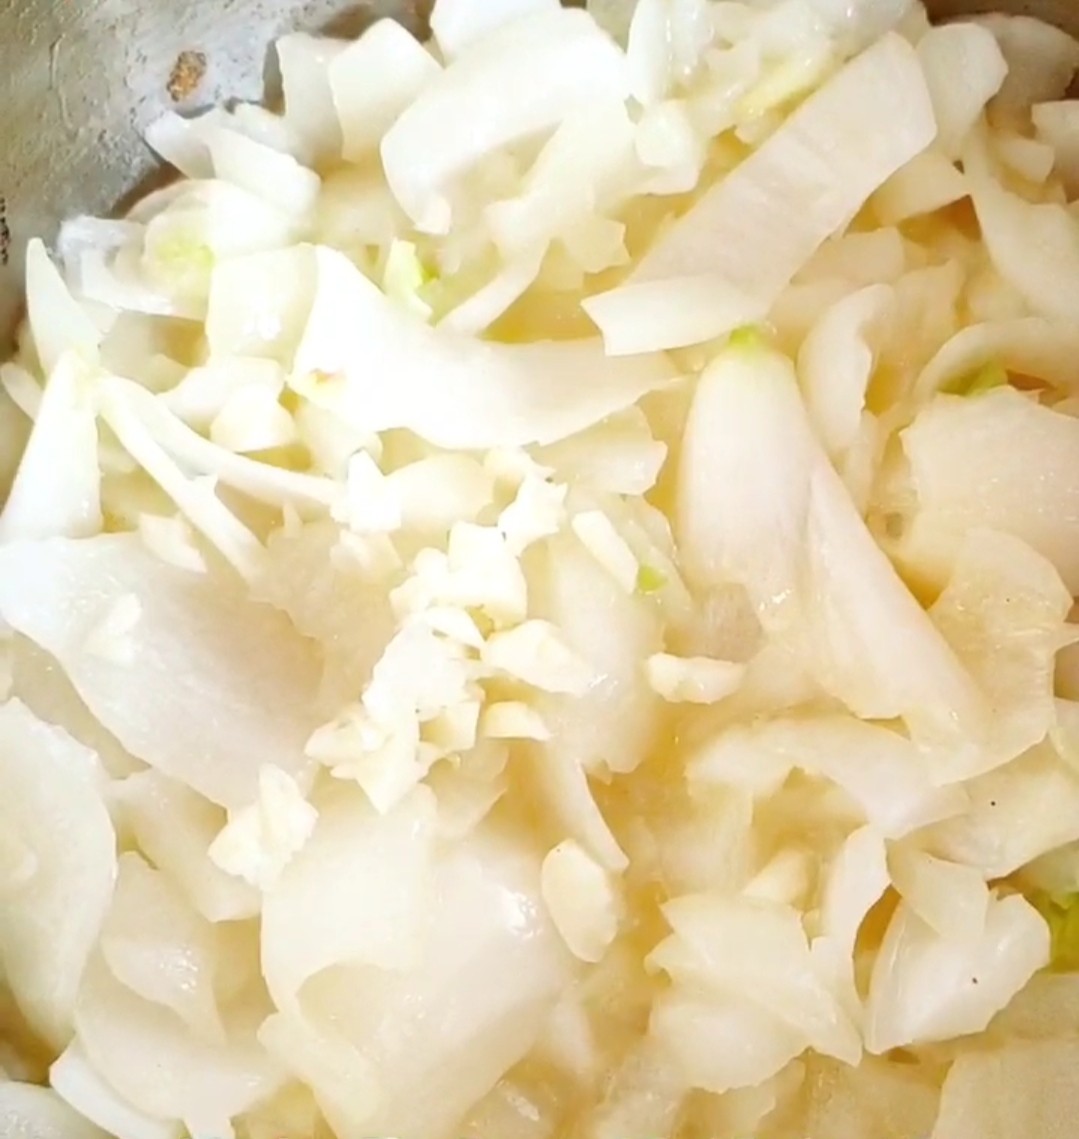 An Onion Soup recipe